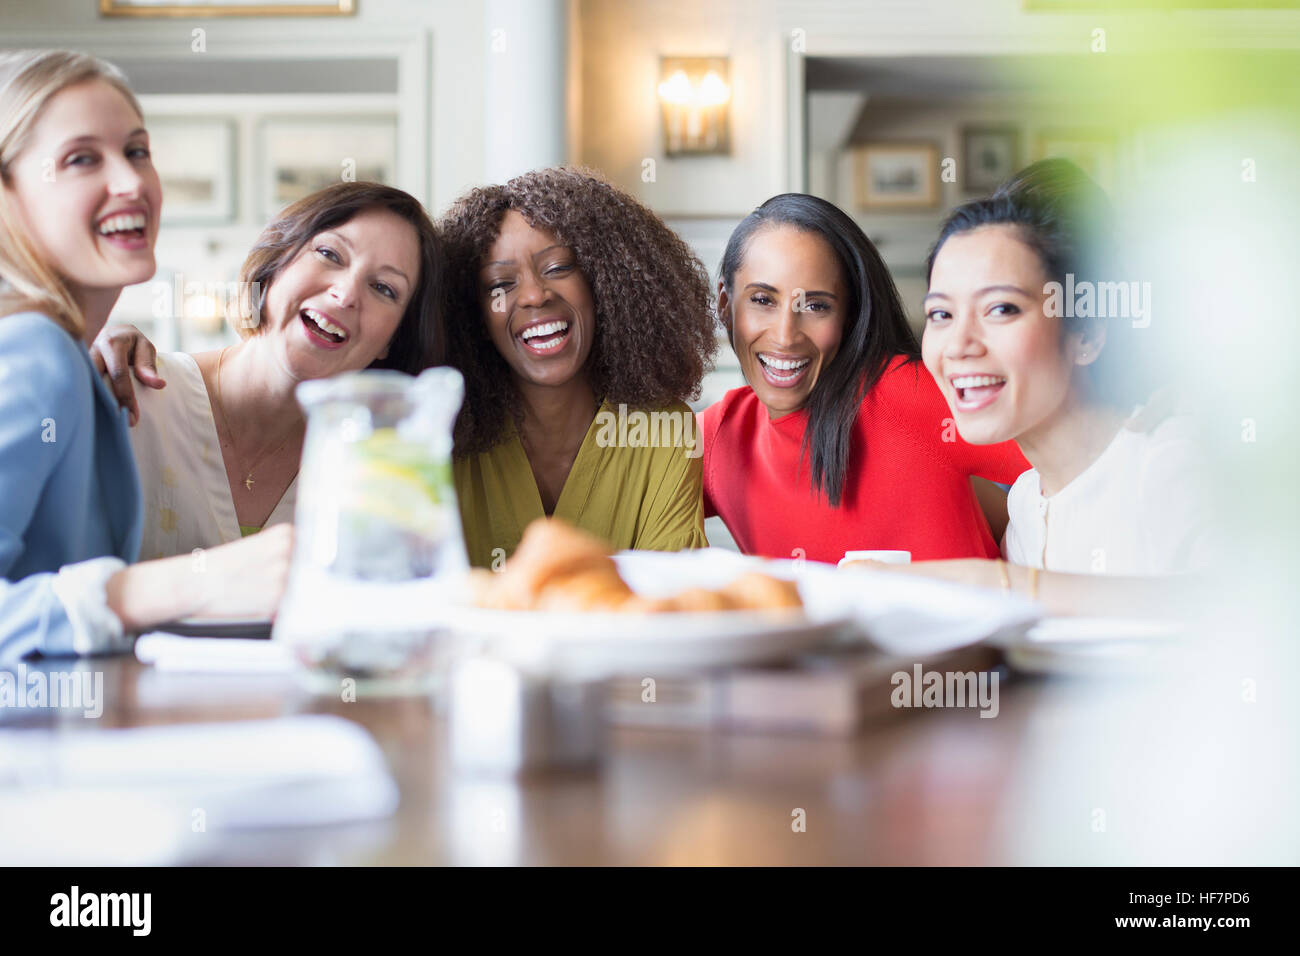 Portrait de rire amis des femmes à manger table restaurant Banque D'Images